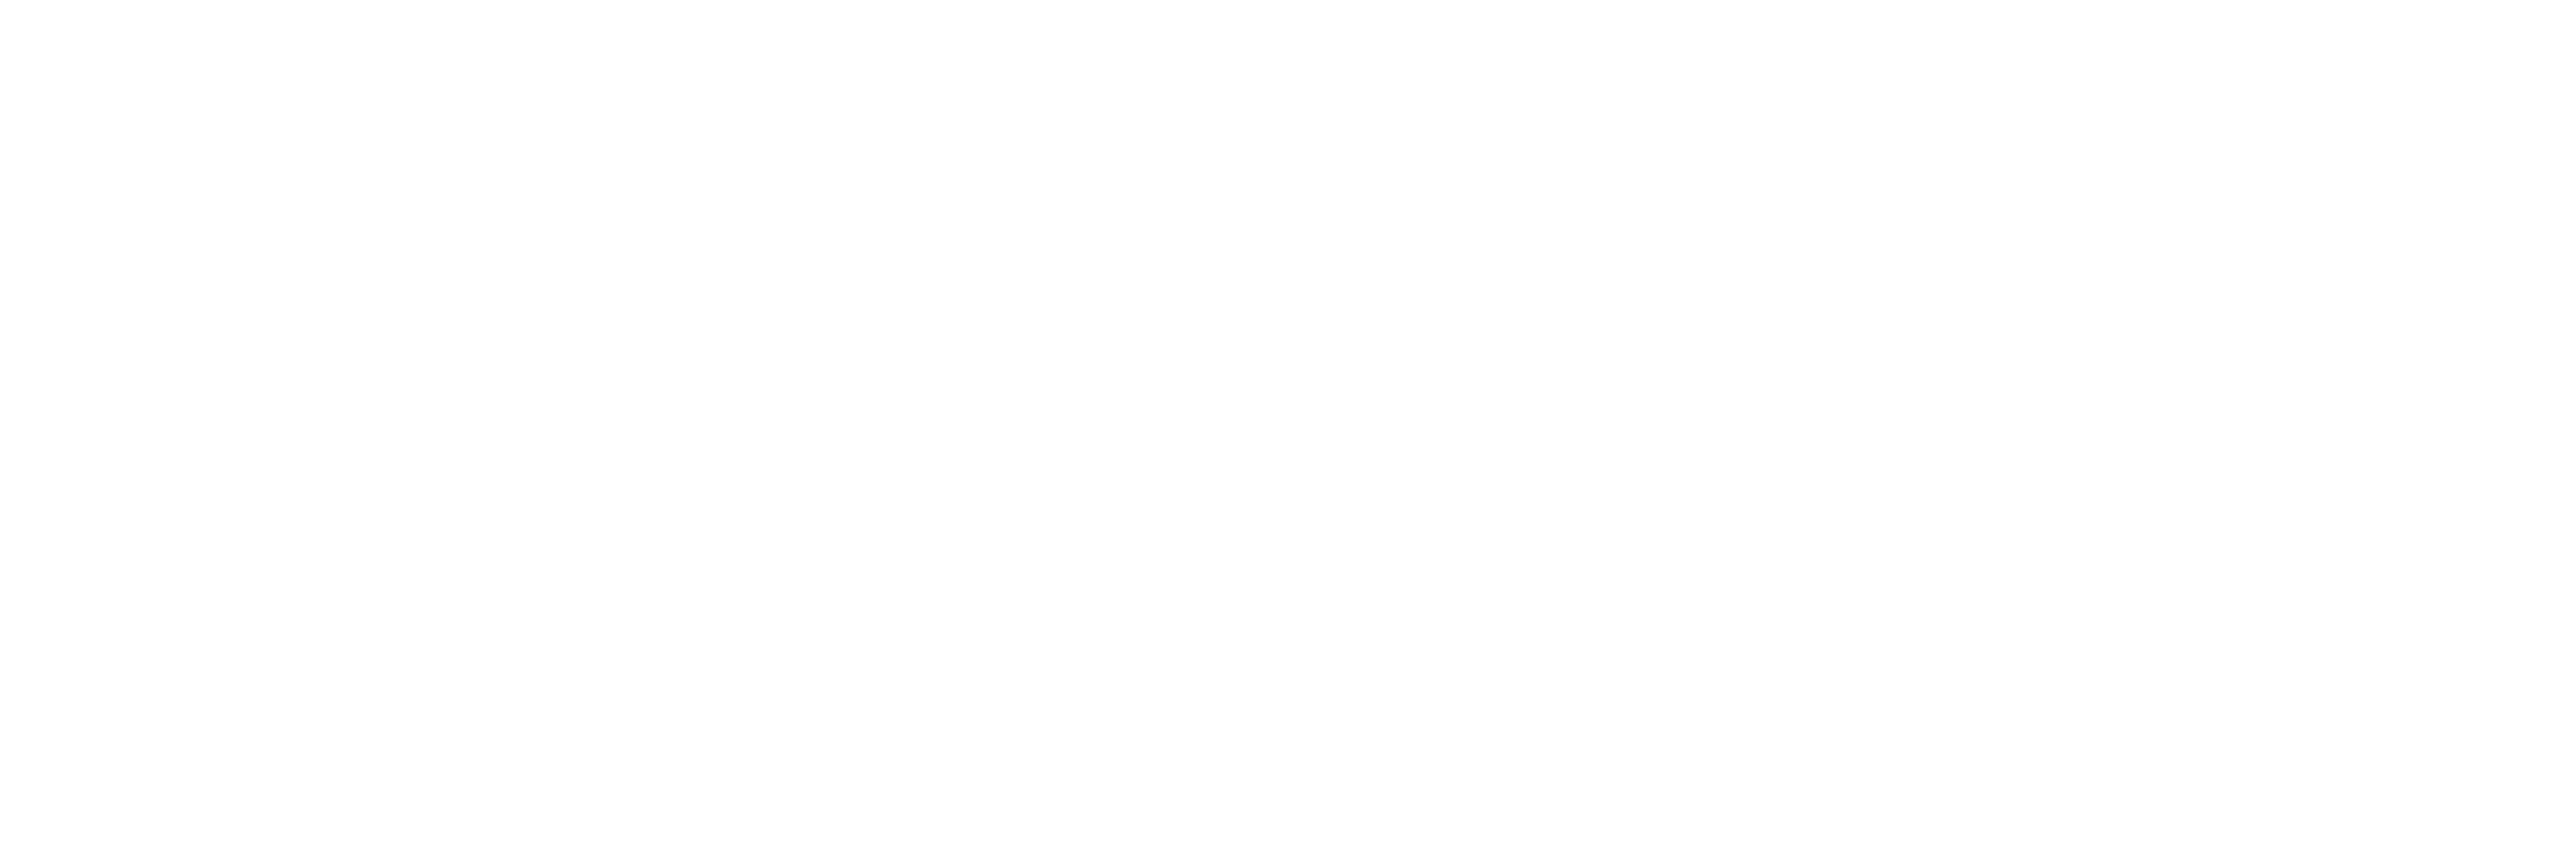 Parker Real Estate Group